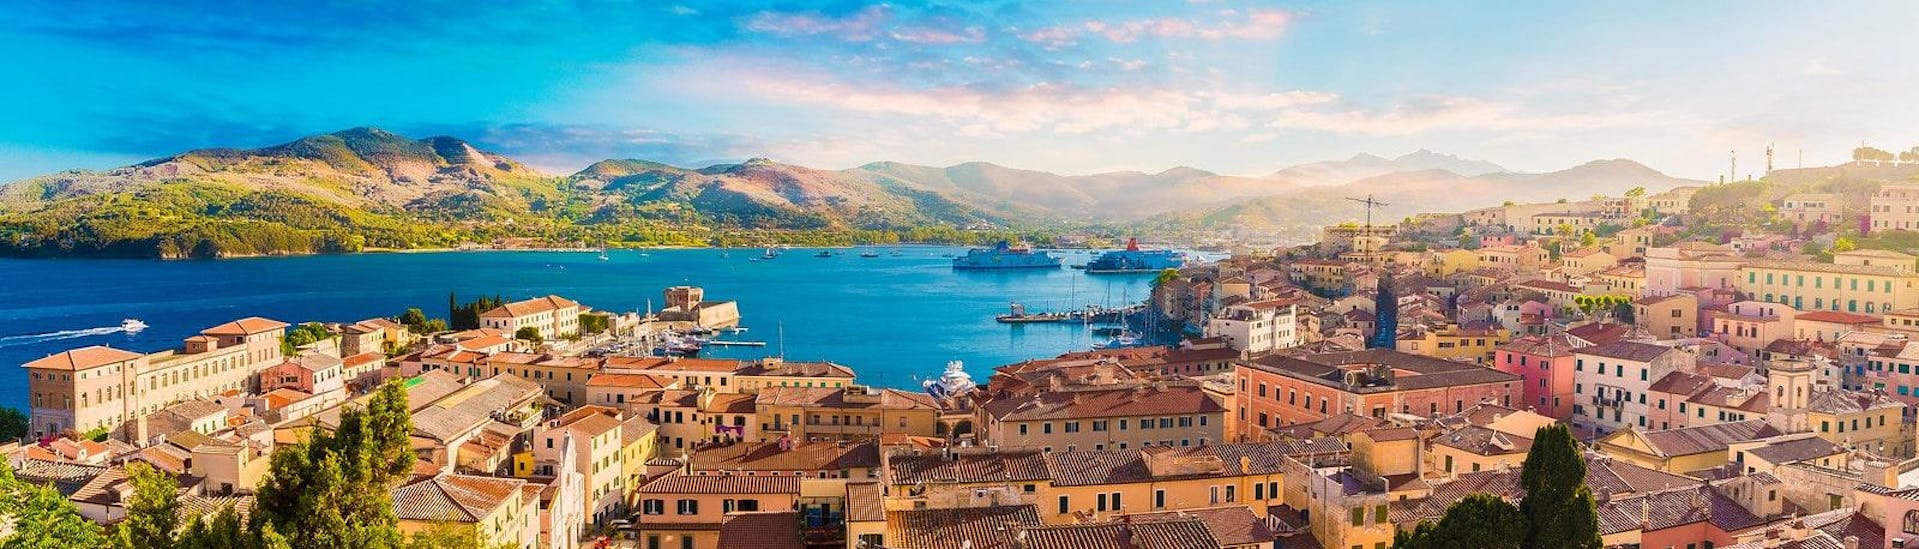 Vista maravillosa del casco antiguo y del puerto de Portoferraio, Isla de Elba, Italia.